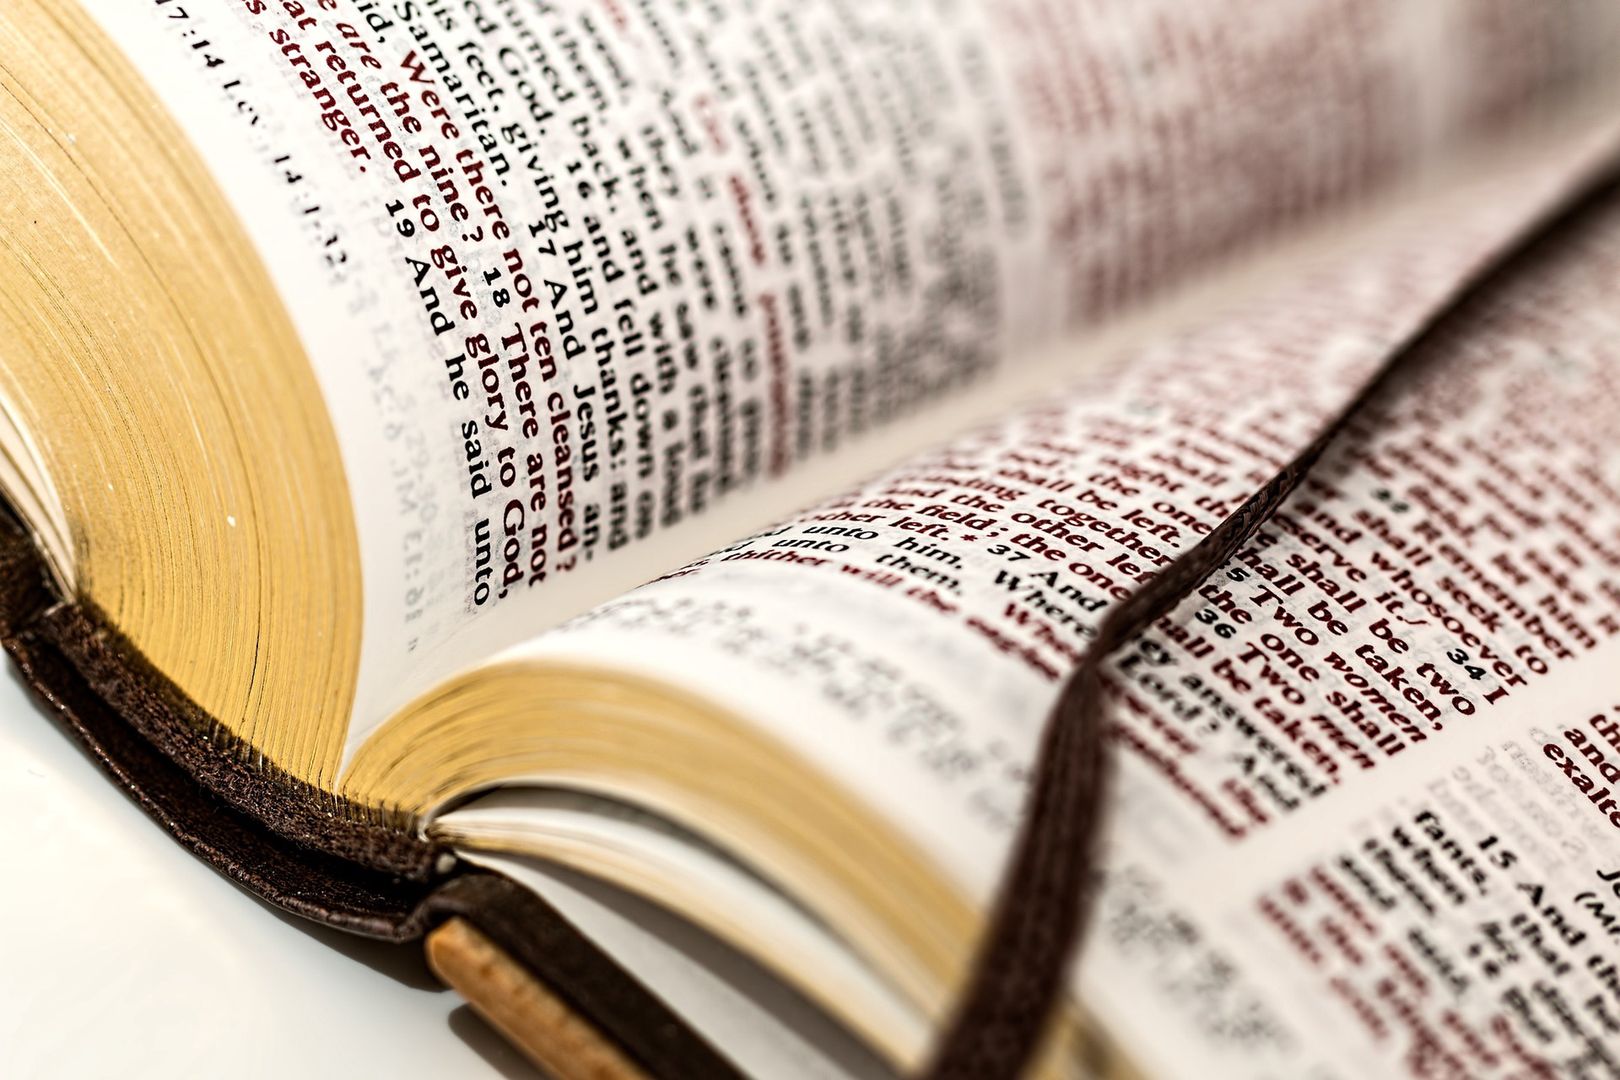 Naukowcy odkryli usunięty fragment Nowego Testamentu. "Brama do zrozumienia Biblii"